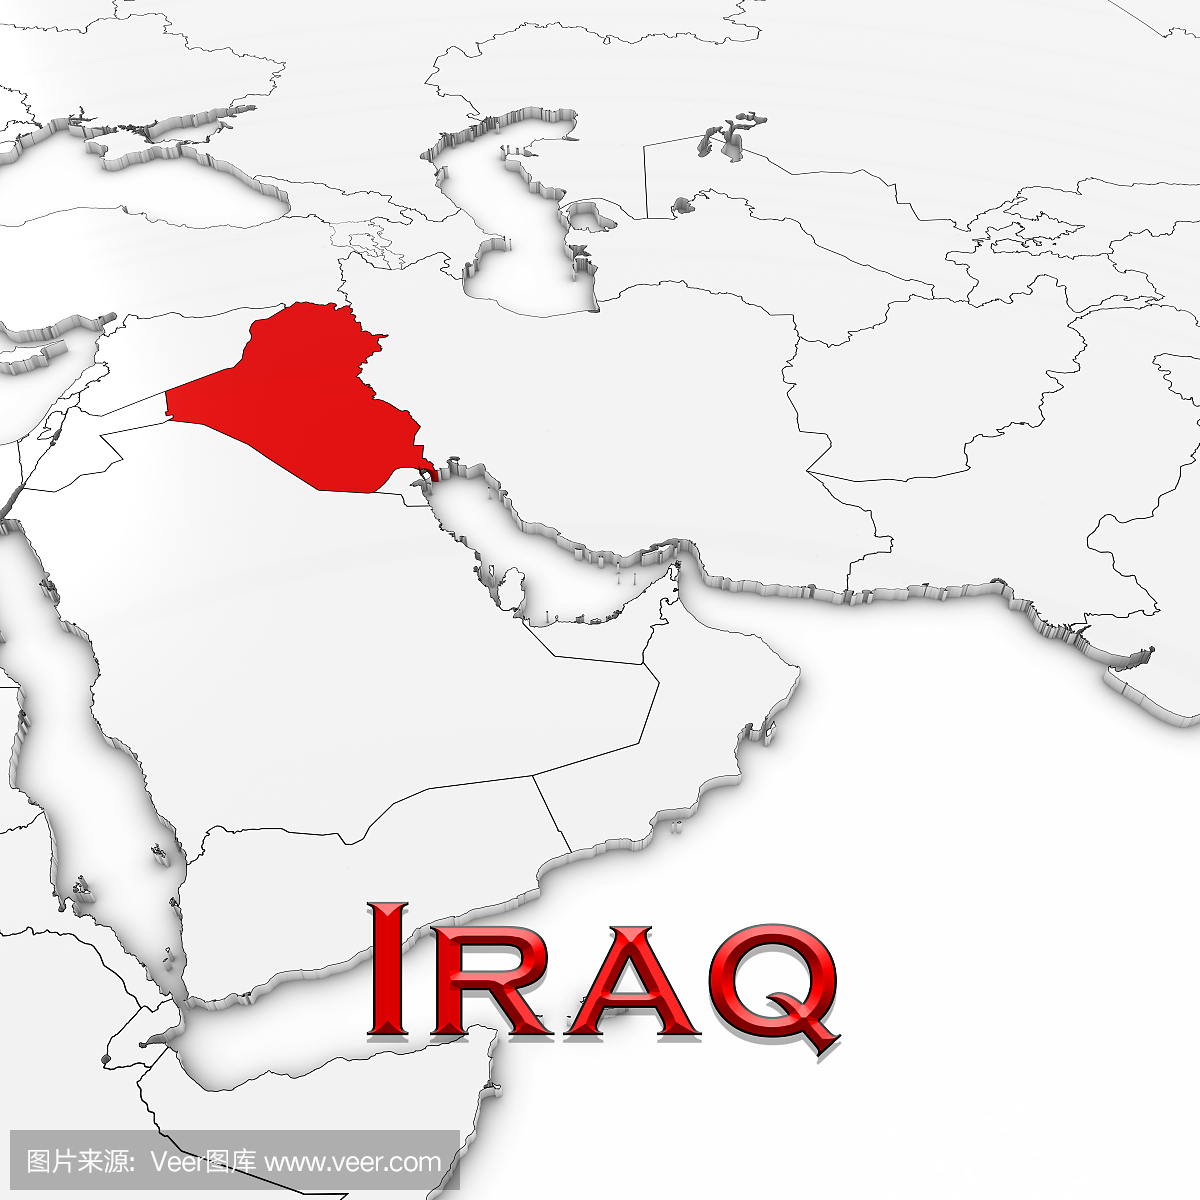 3D地图伊拉克与国家名称突出显示在白色背景